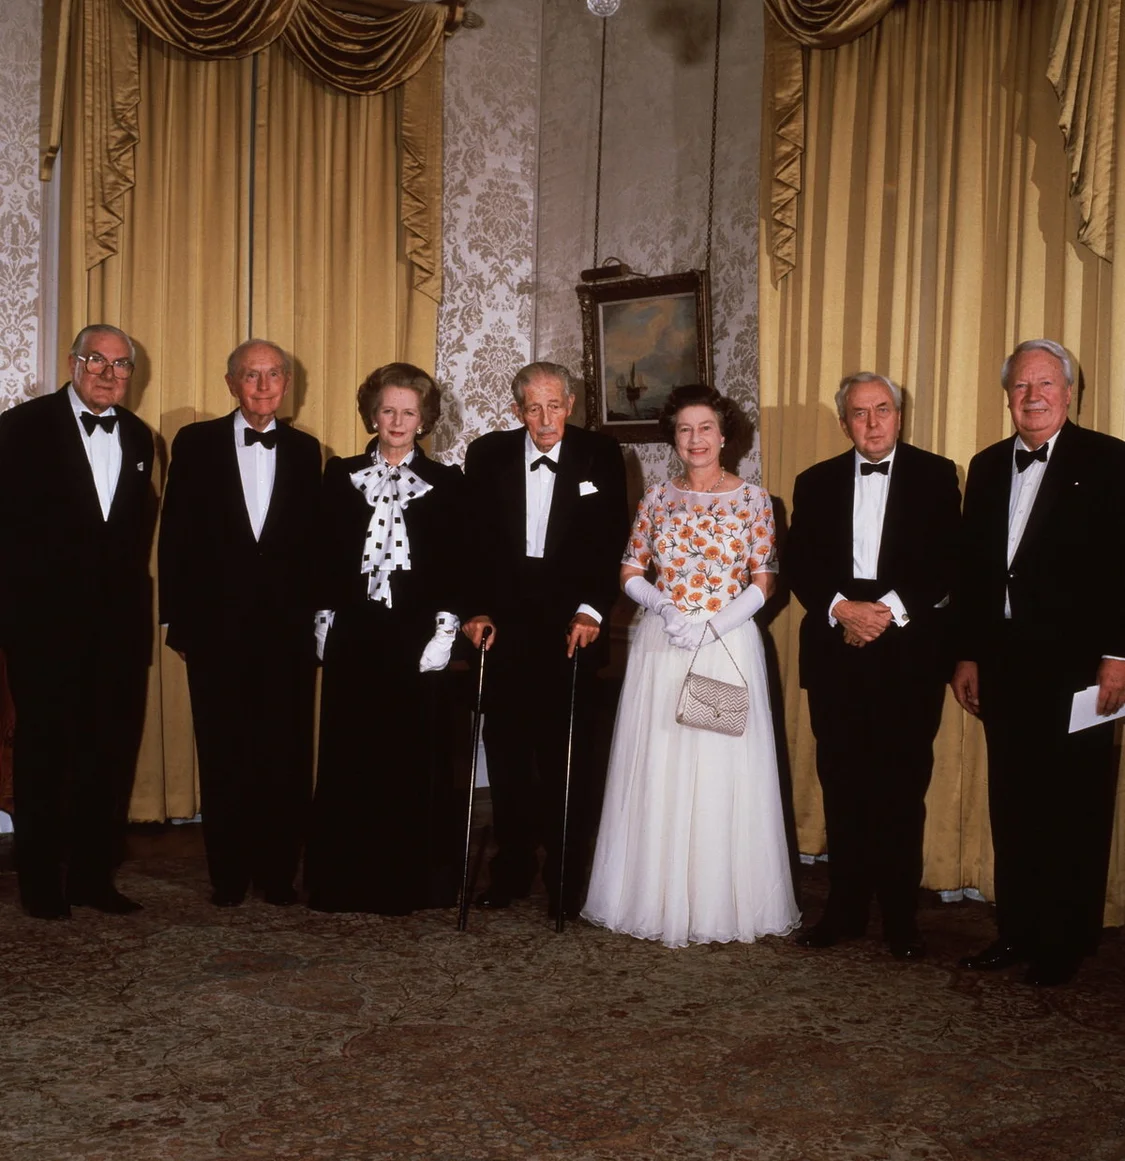 1985年，伊丽莎白女王在首相官邸与时任、历任英国首相合影，一起庆祝唐宁街10号成为英国首相官邸250周年。从左至右：詹姆斯·卡拉汉、亚历克·道格拉斯·霍姆爵士、玛格丽特·撒切尔、哈罗德·麦克米伦、女王、哈罗德·威尔逊和特德·希思。